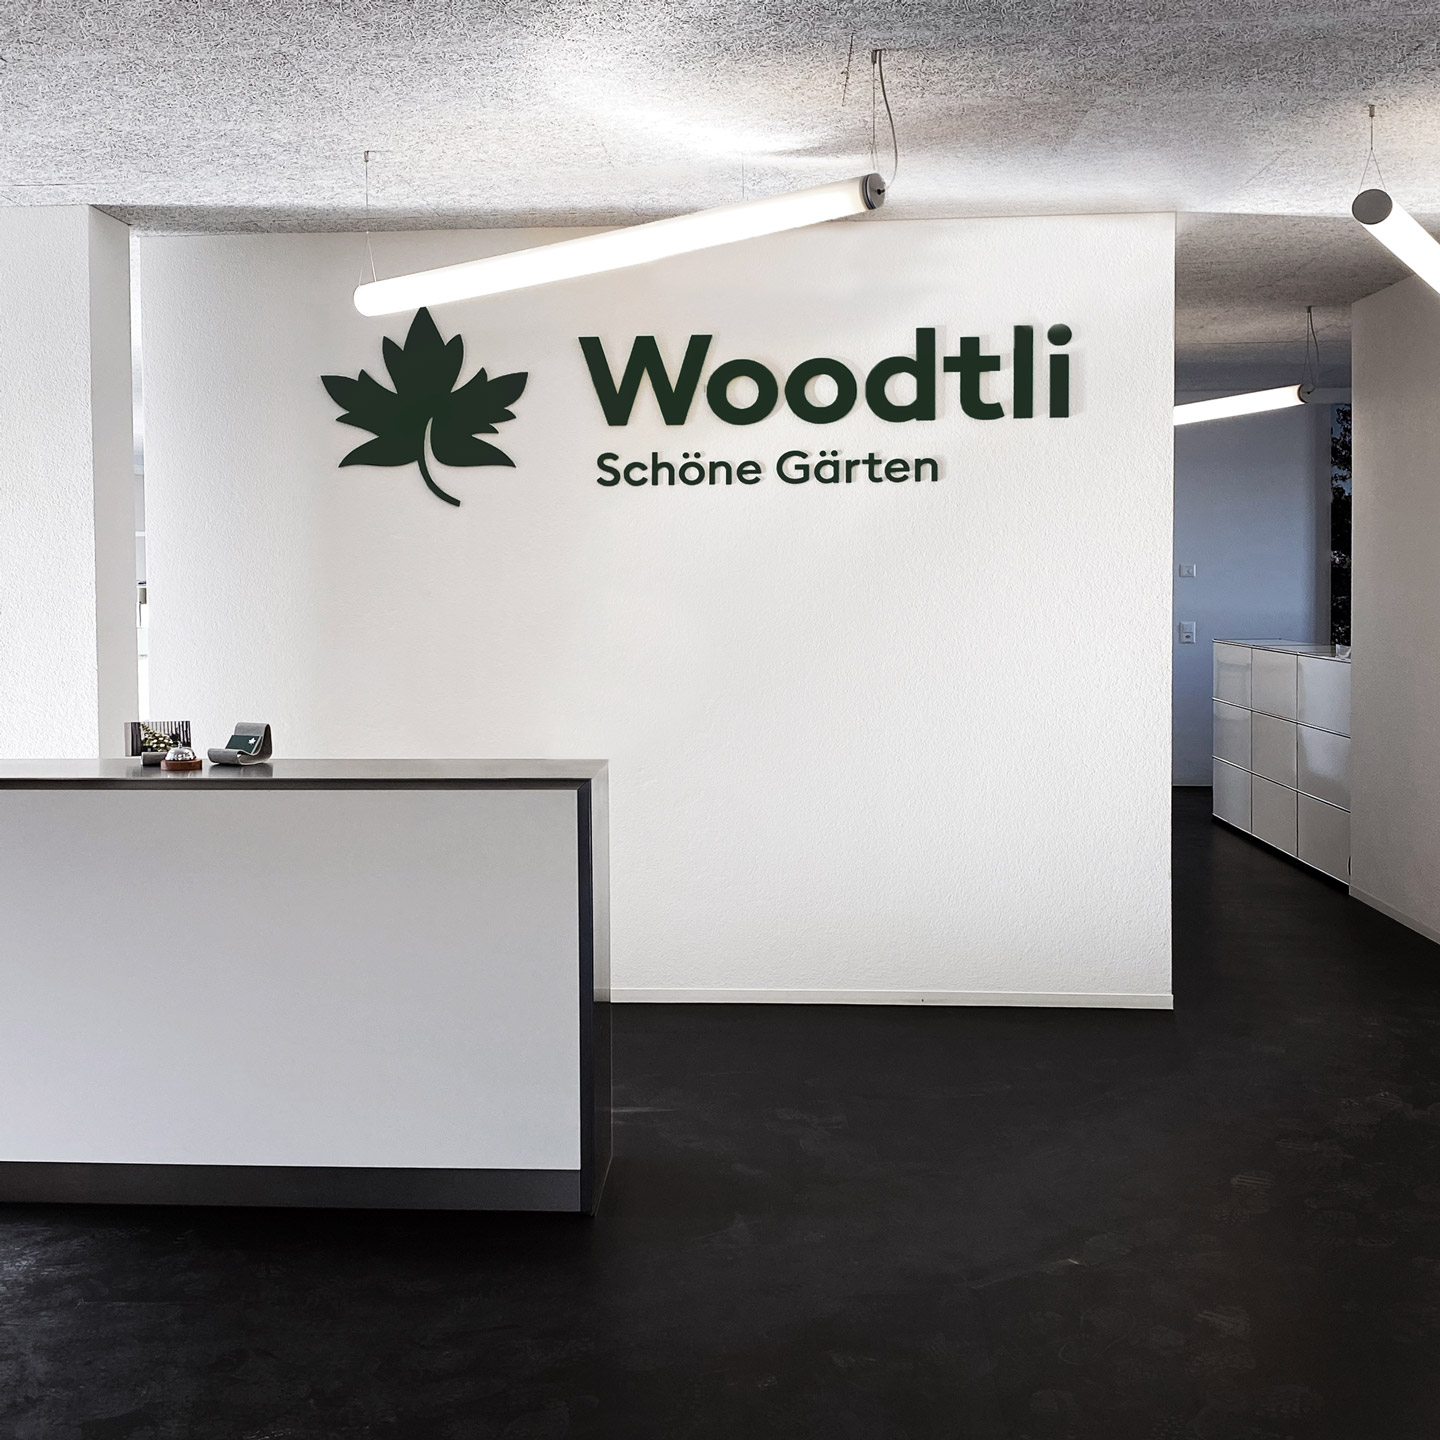 Am Empfang des Unternehmens sind an der weissen Wand im Hintergrund gross das Woodtli-Logo und der Slogan «Schöne Gärten» in Grün zu sehen.